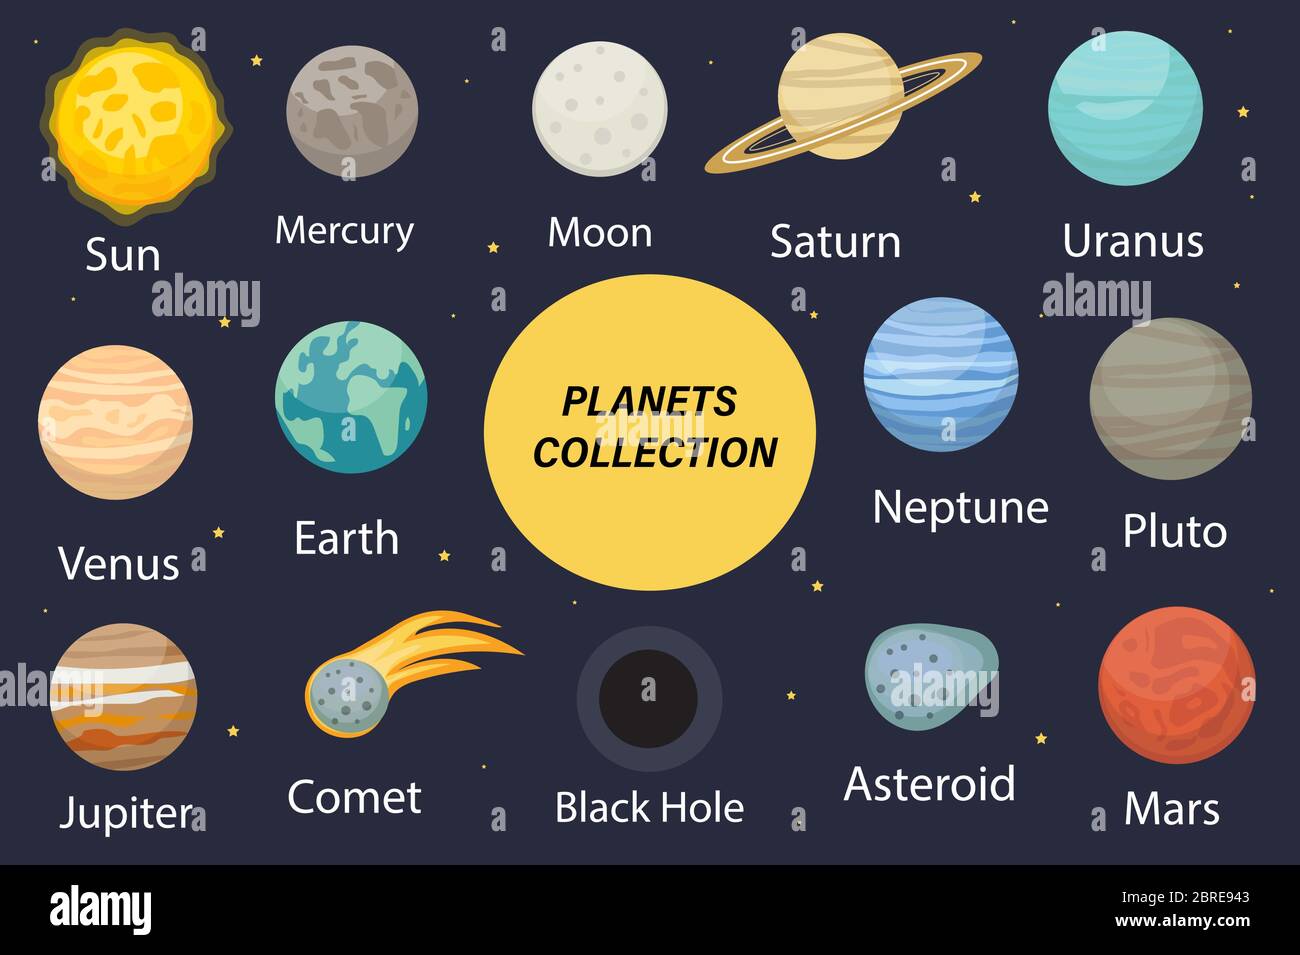 Planeta Solar Iconos De Sistema Plano Colección De Planetas Con Sol Mercurio Marte Tierra 